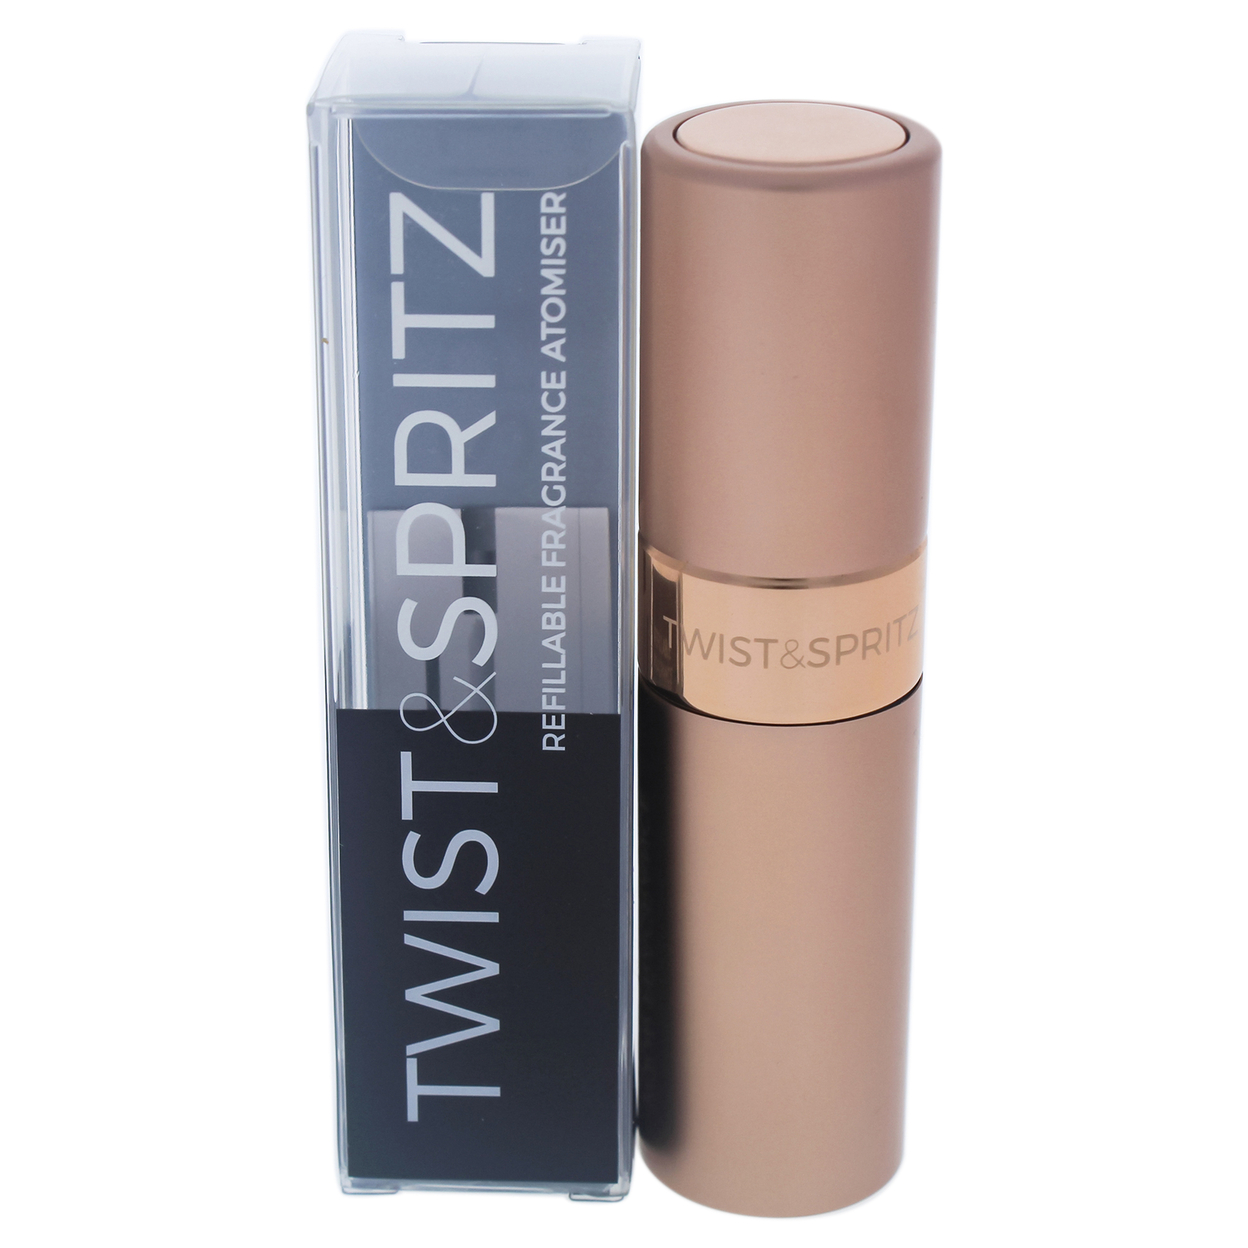 Twist And Spritz Atomiser - Rose Gold 8 Ml 8 Ml